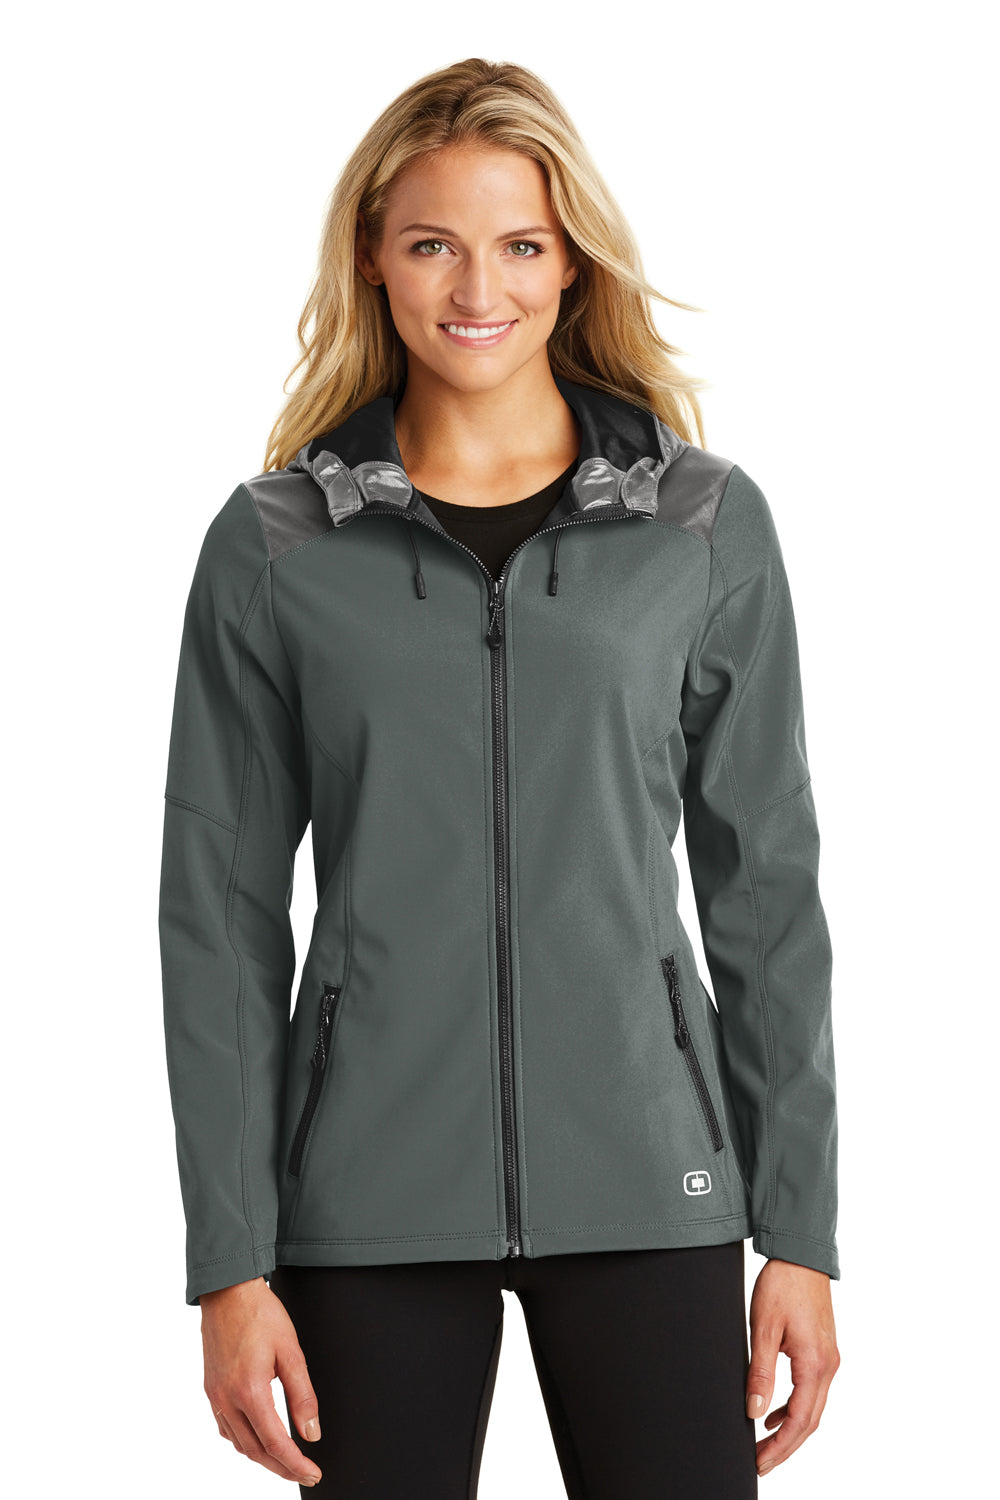 Ogio LOE723 Womens Endurance Liquid Wind & Water Resistant Full Zip Hooded Jacket Diesel Grey Front